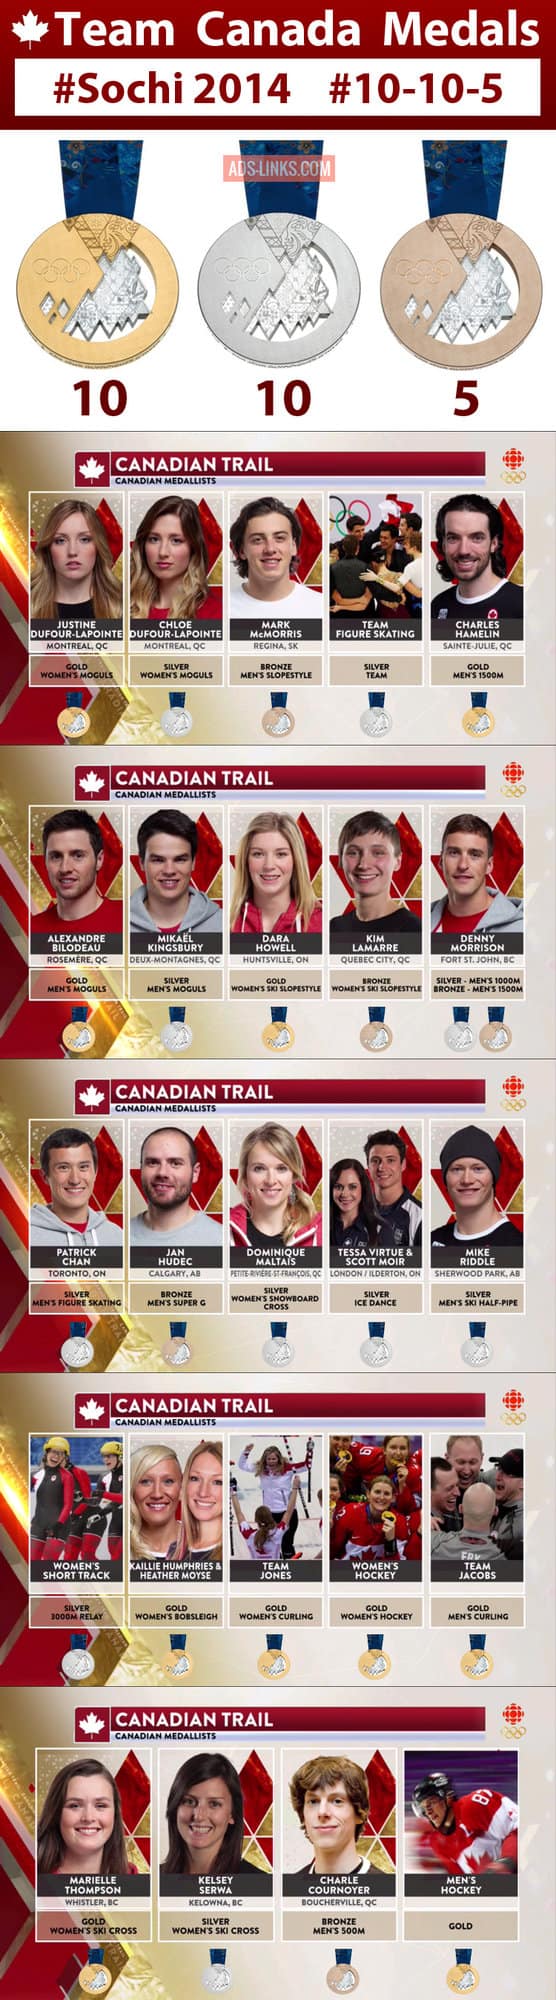 Team Canada Sochi 2014 Medals